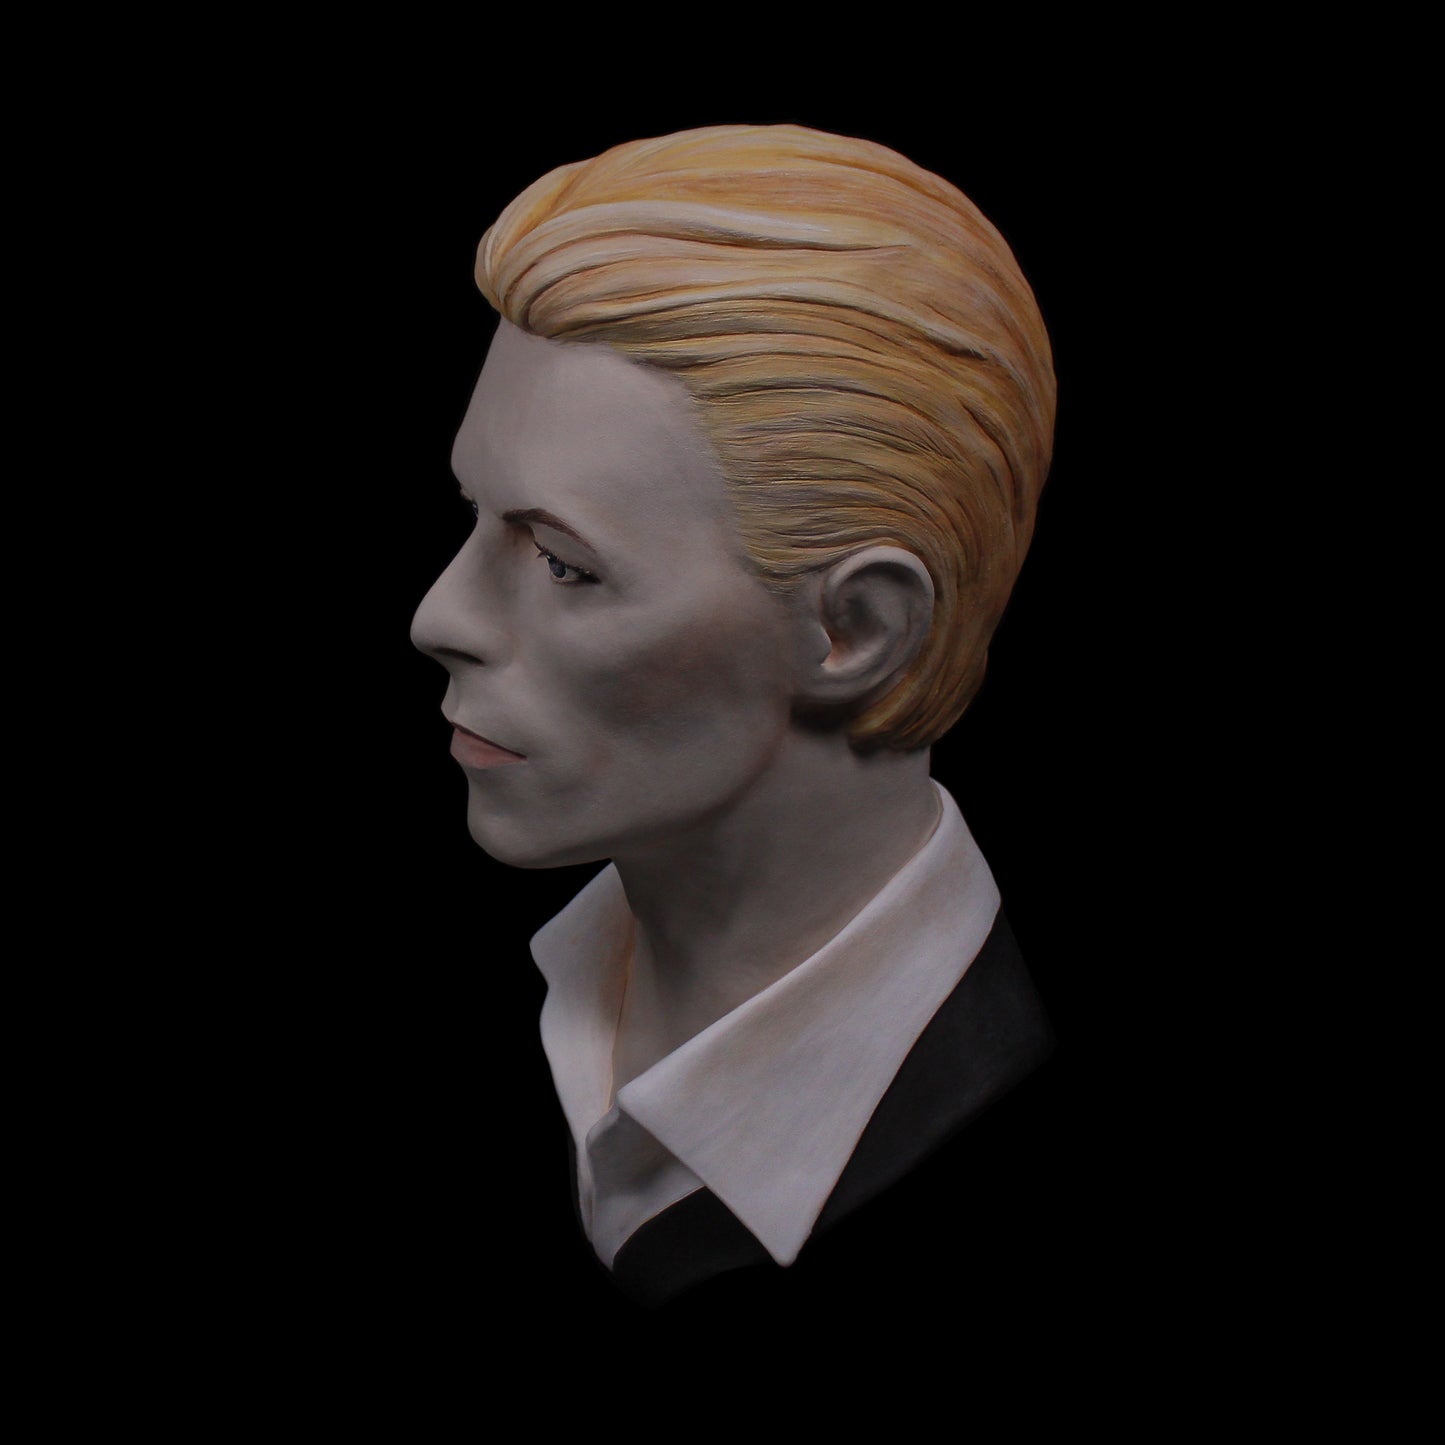 David Bowie 'The Thin White Duke' - Full Head Bust Sculpture